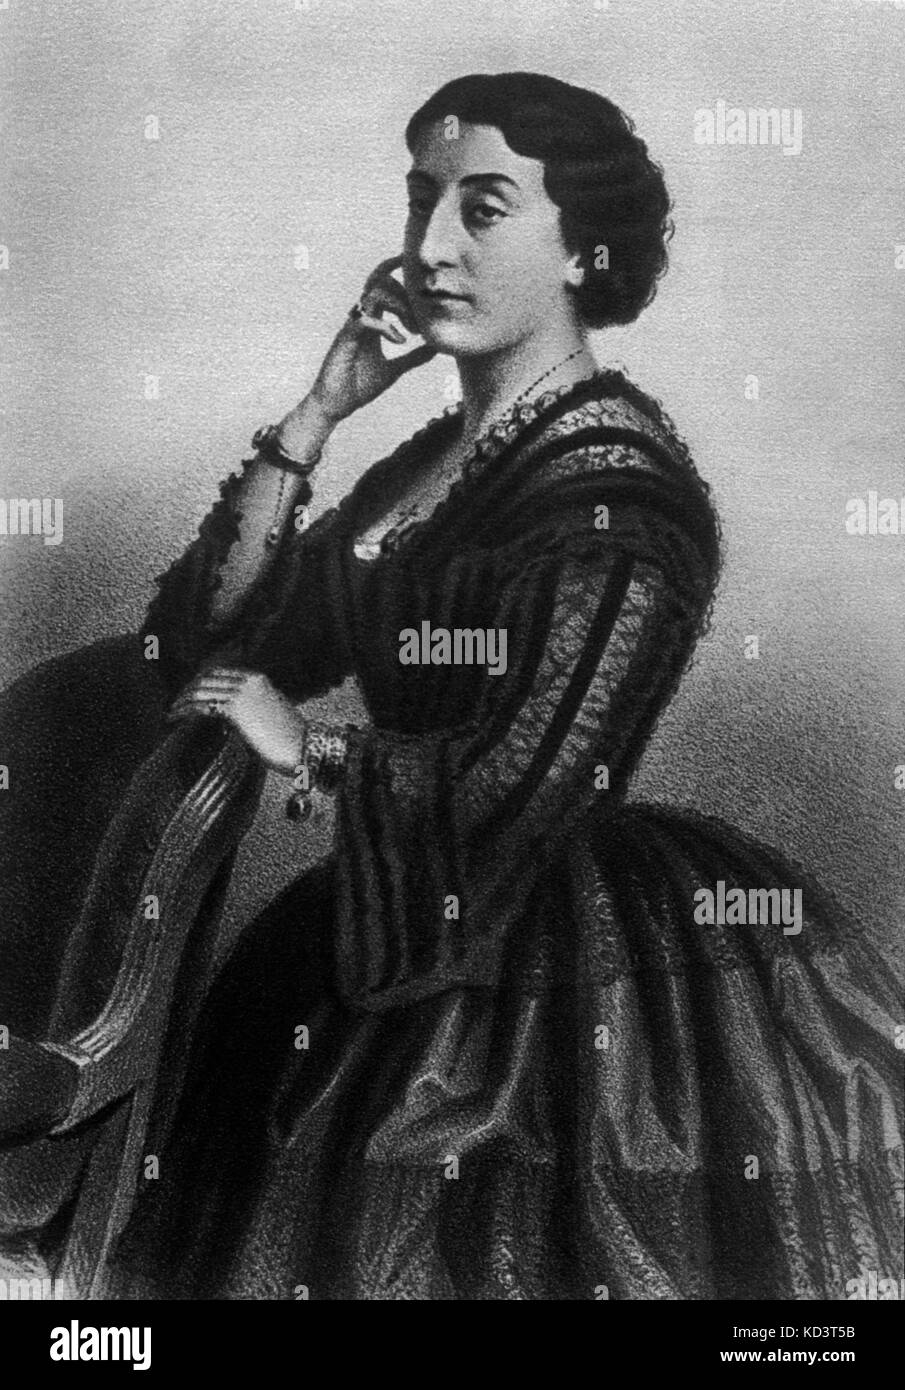 Erminia Frezzolini - Portrait der Italienische Sopranistin. Ständigen, stützte sich auf einen Stuhl. EF: 27. März 1818 - 5. November 1884. Sang in der ersten Aufführungen von Verdis I Lombardi und Giovanna d'Arco. Stockfoto